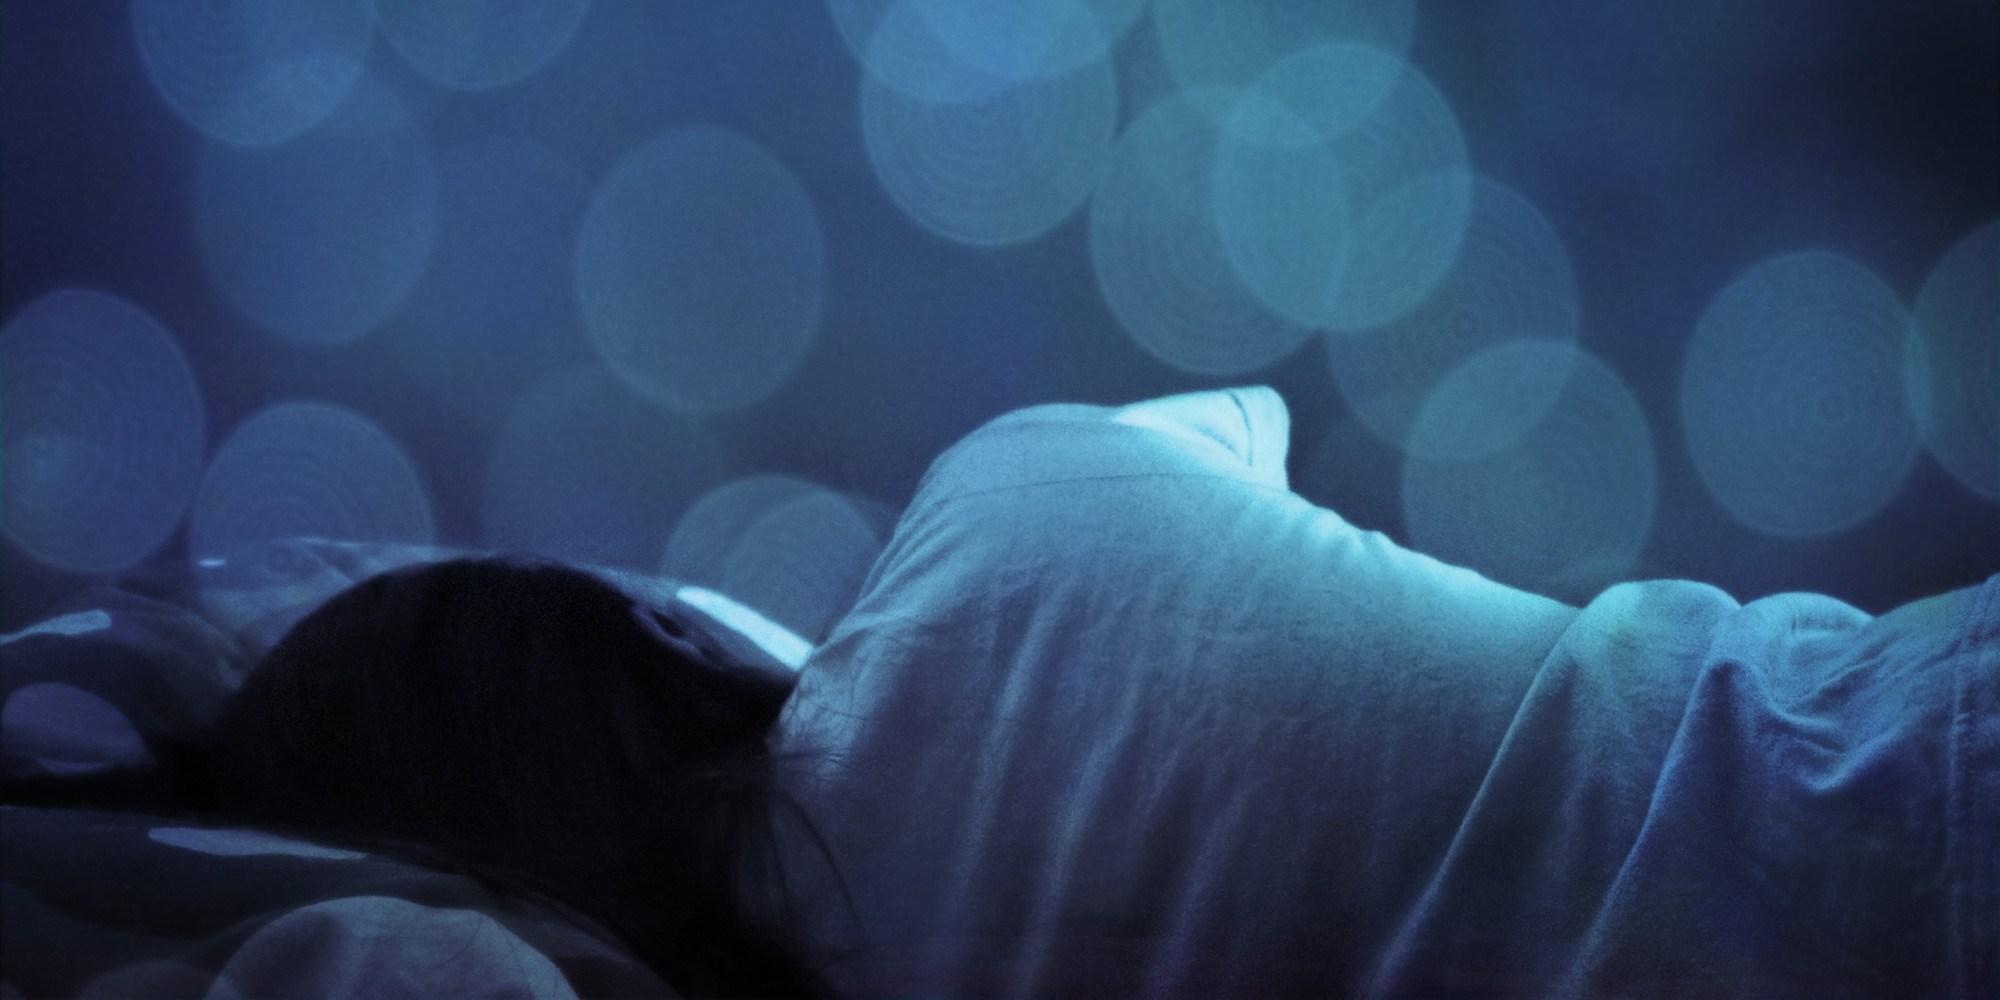 Γιατί ενώ κοιμάστε πολλές ώρες νιώθετε κουρασμένοι; – Οι ειδικοί απαντούν